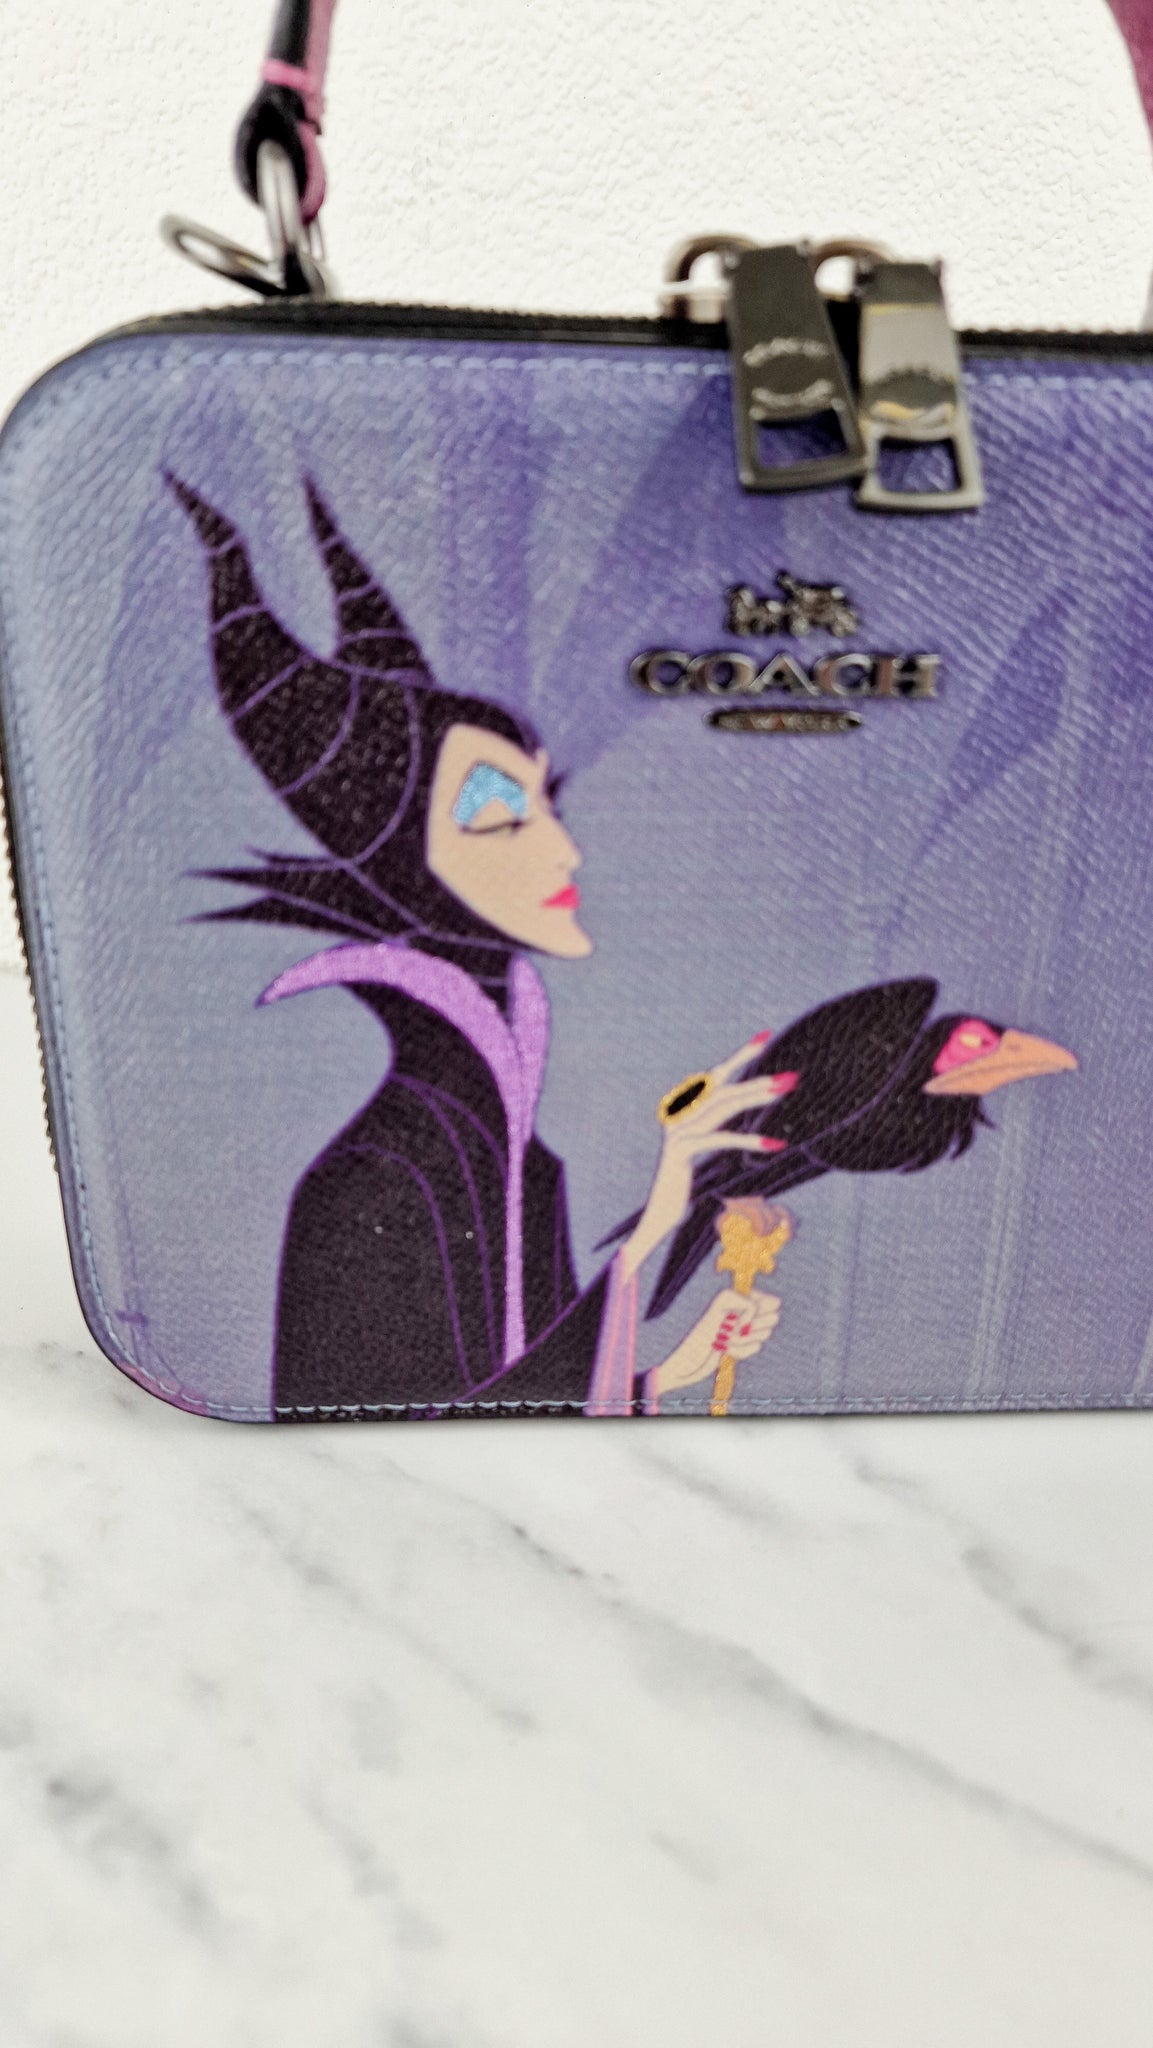 NWT Disney X Coach Box Crossbody With Maleficent Motif